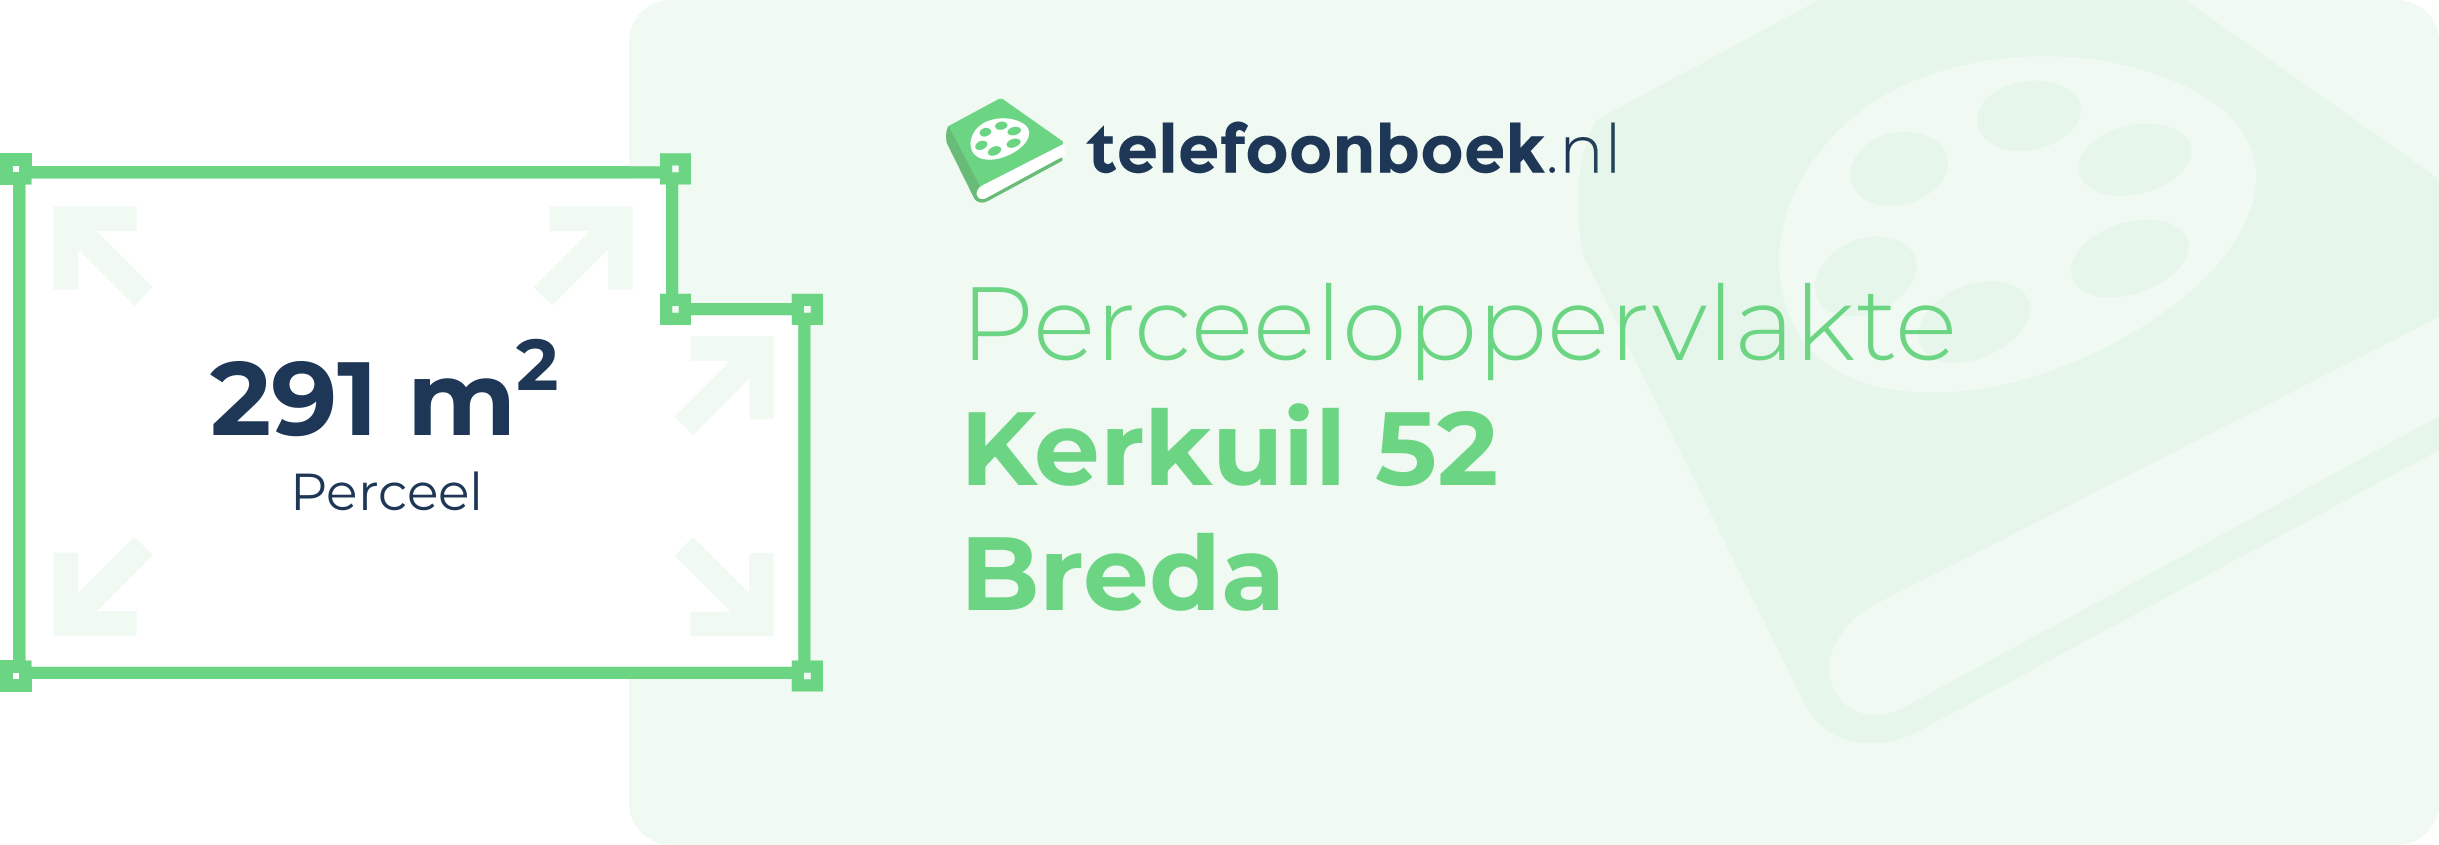 Perceeloppervlakte Kerkuil 52 Breda